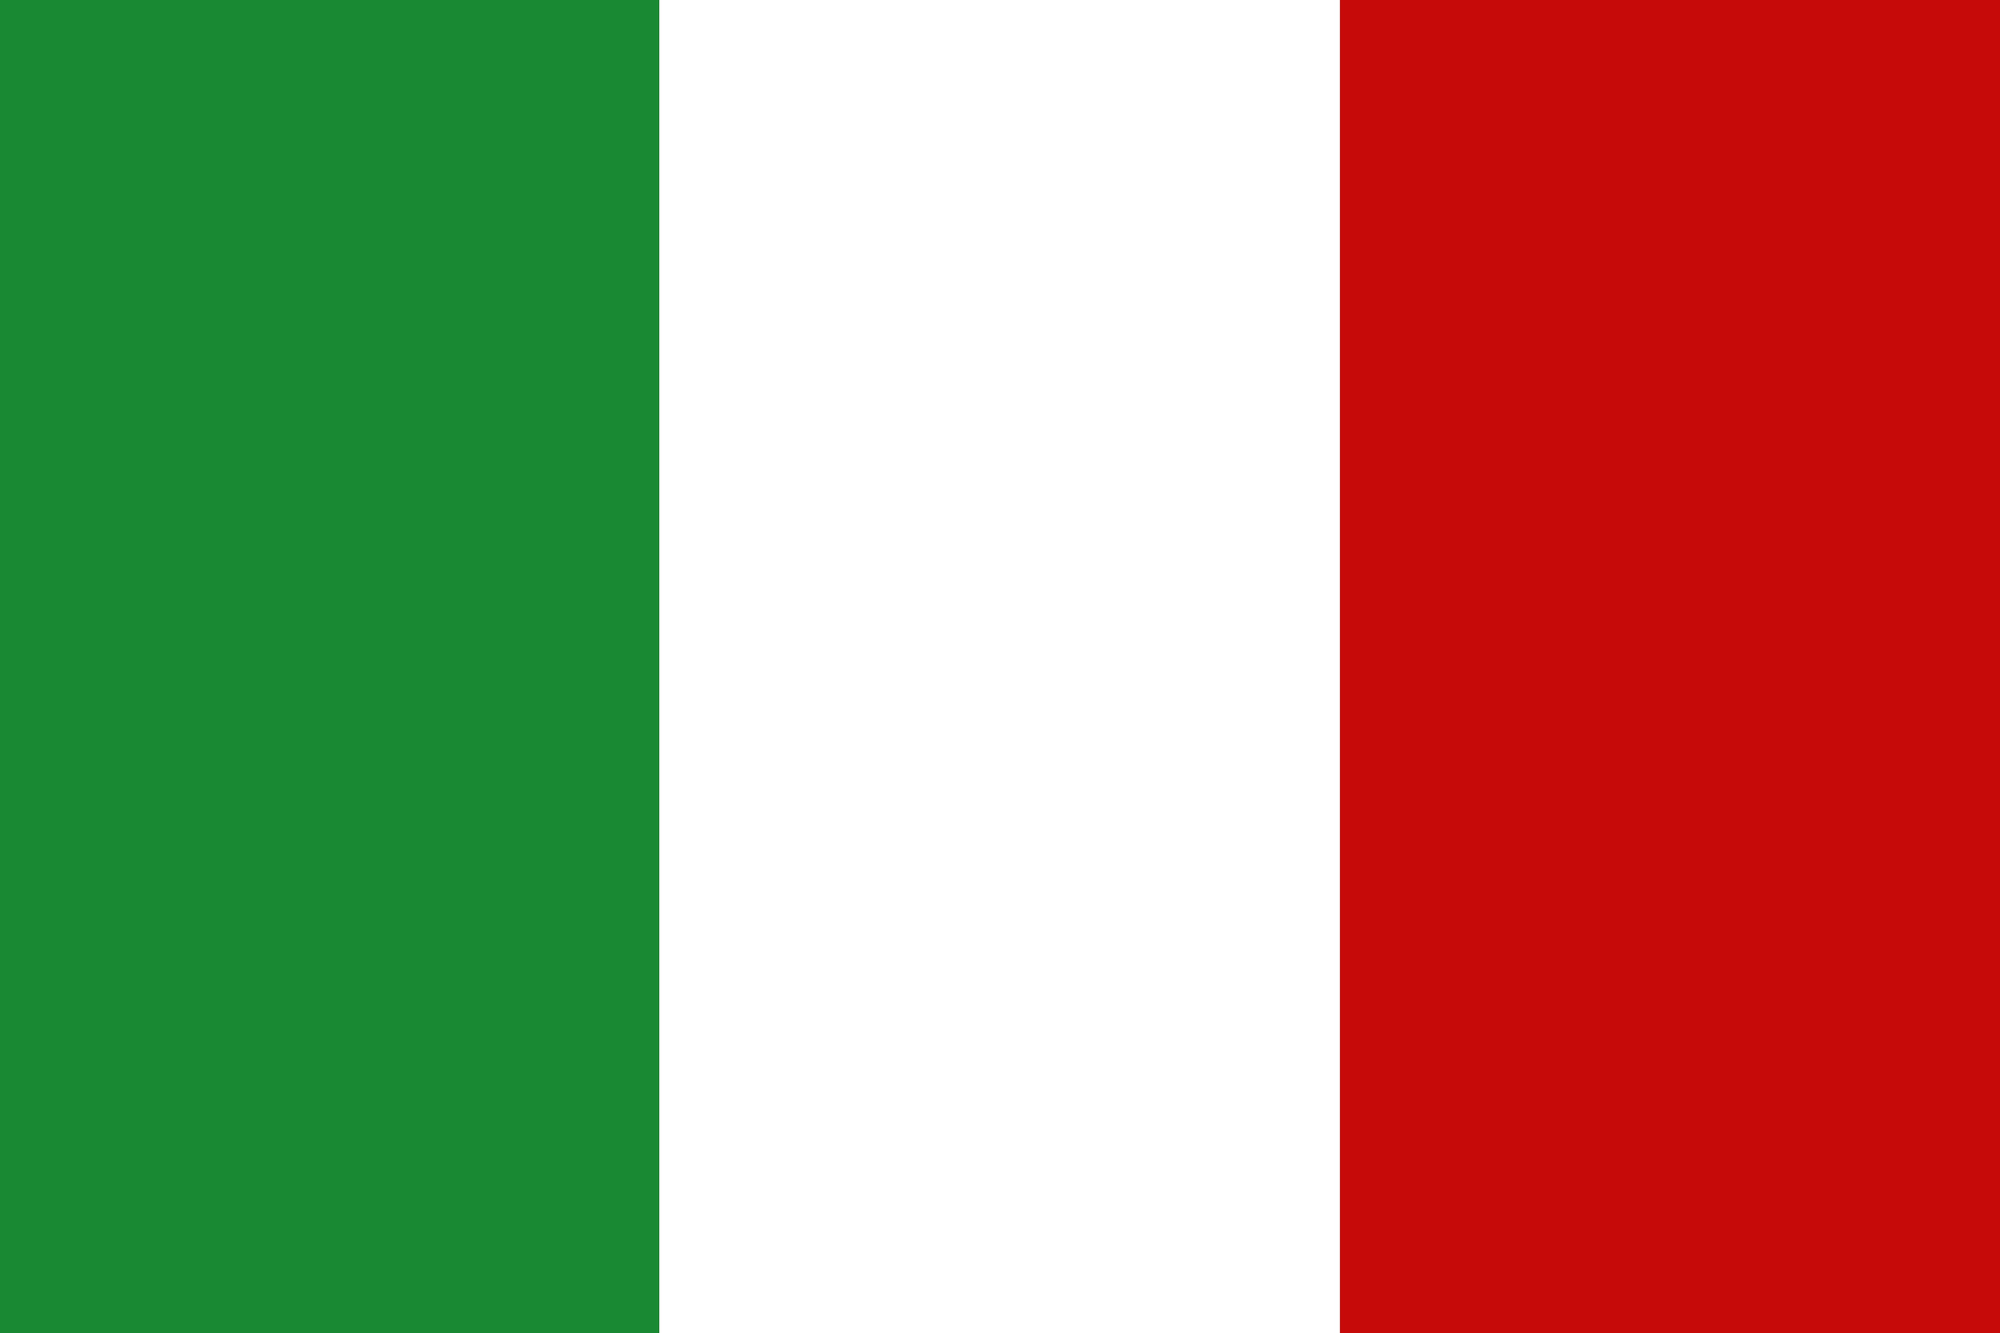 flagge italien